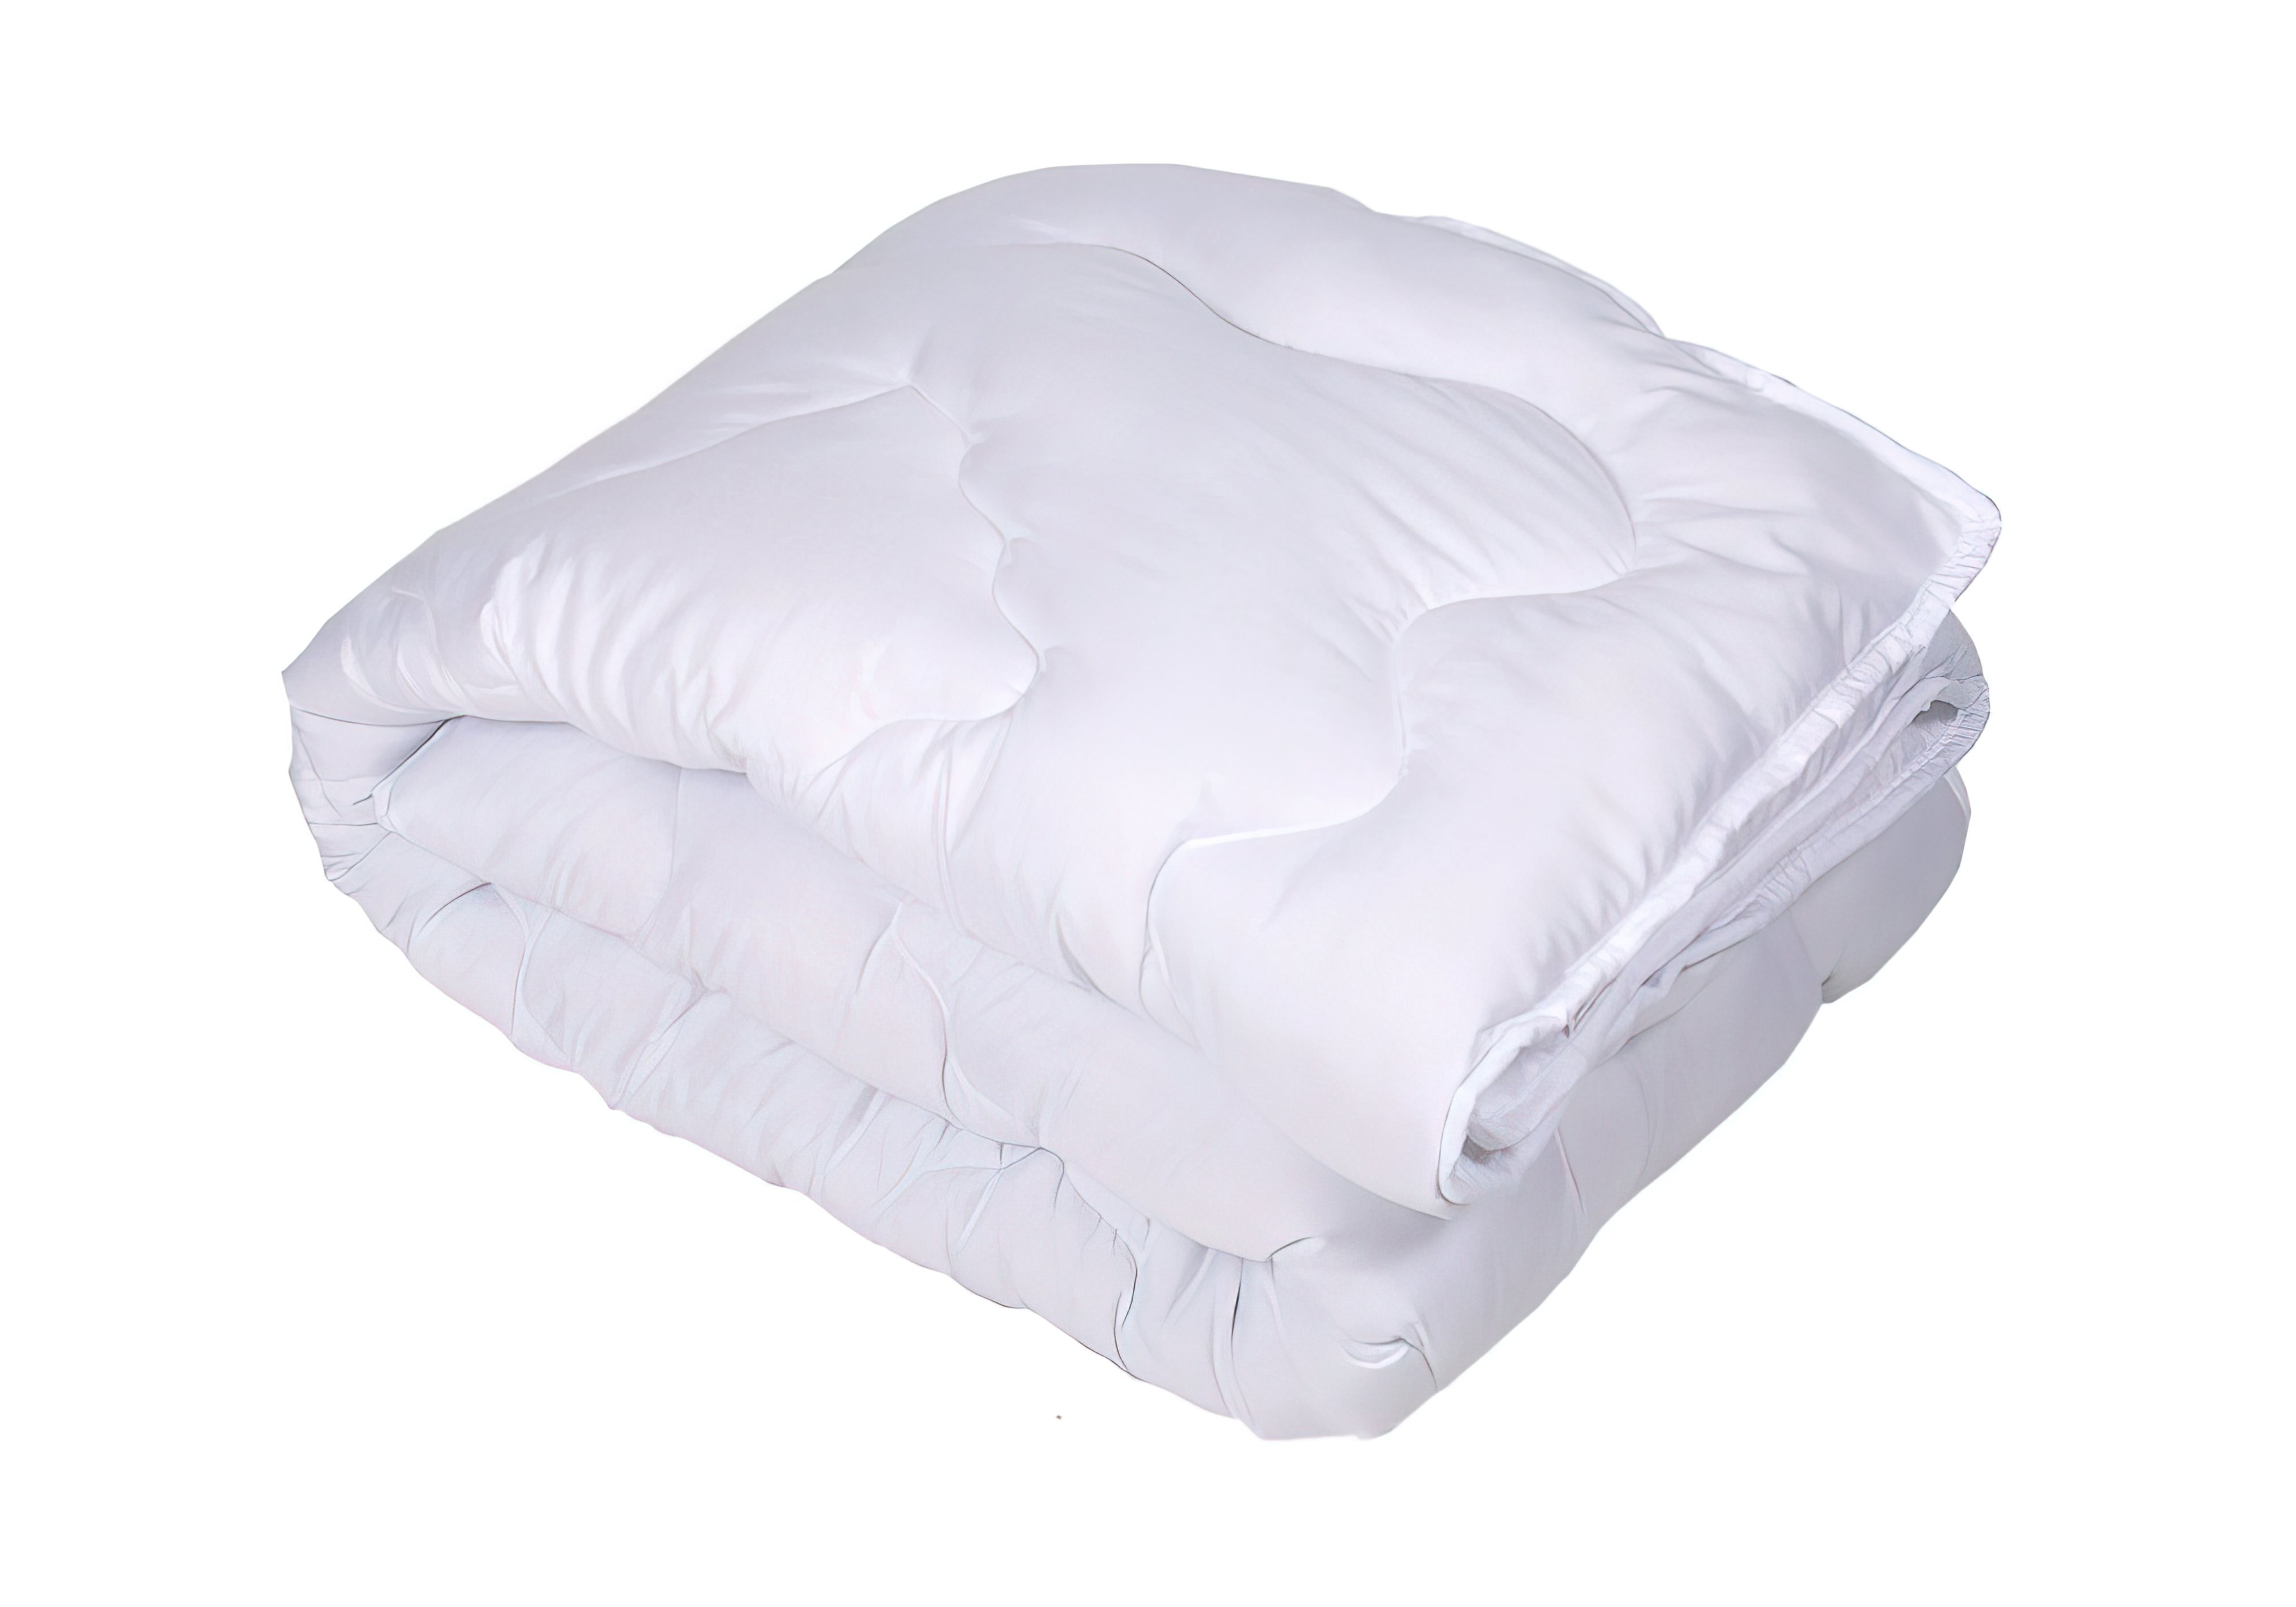 Одеяло Softness белый полуторное Lotus, Количество спальных мест Полуторное